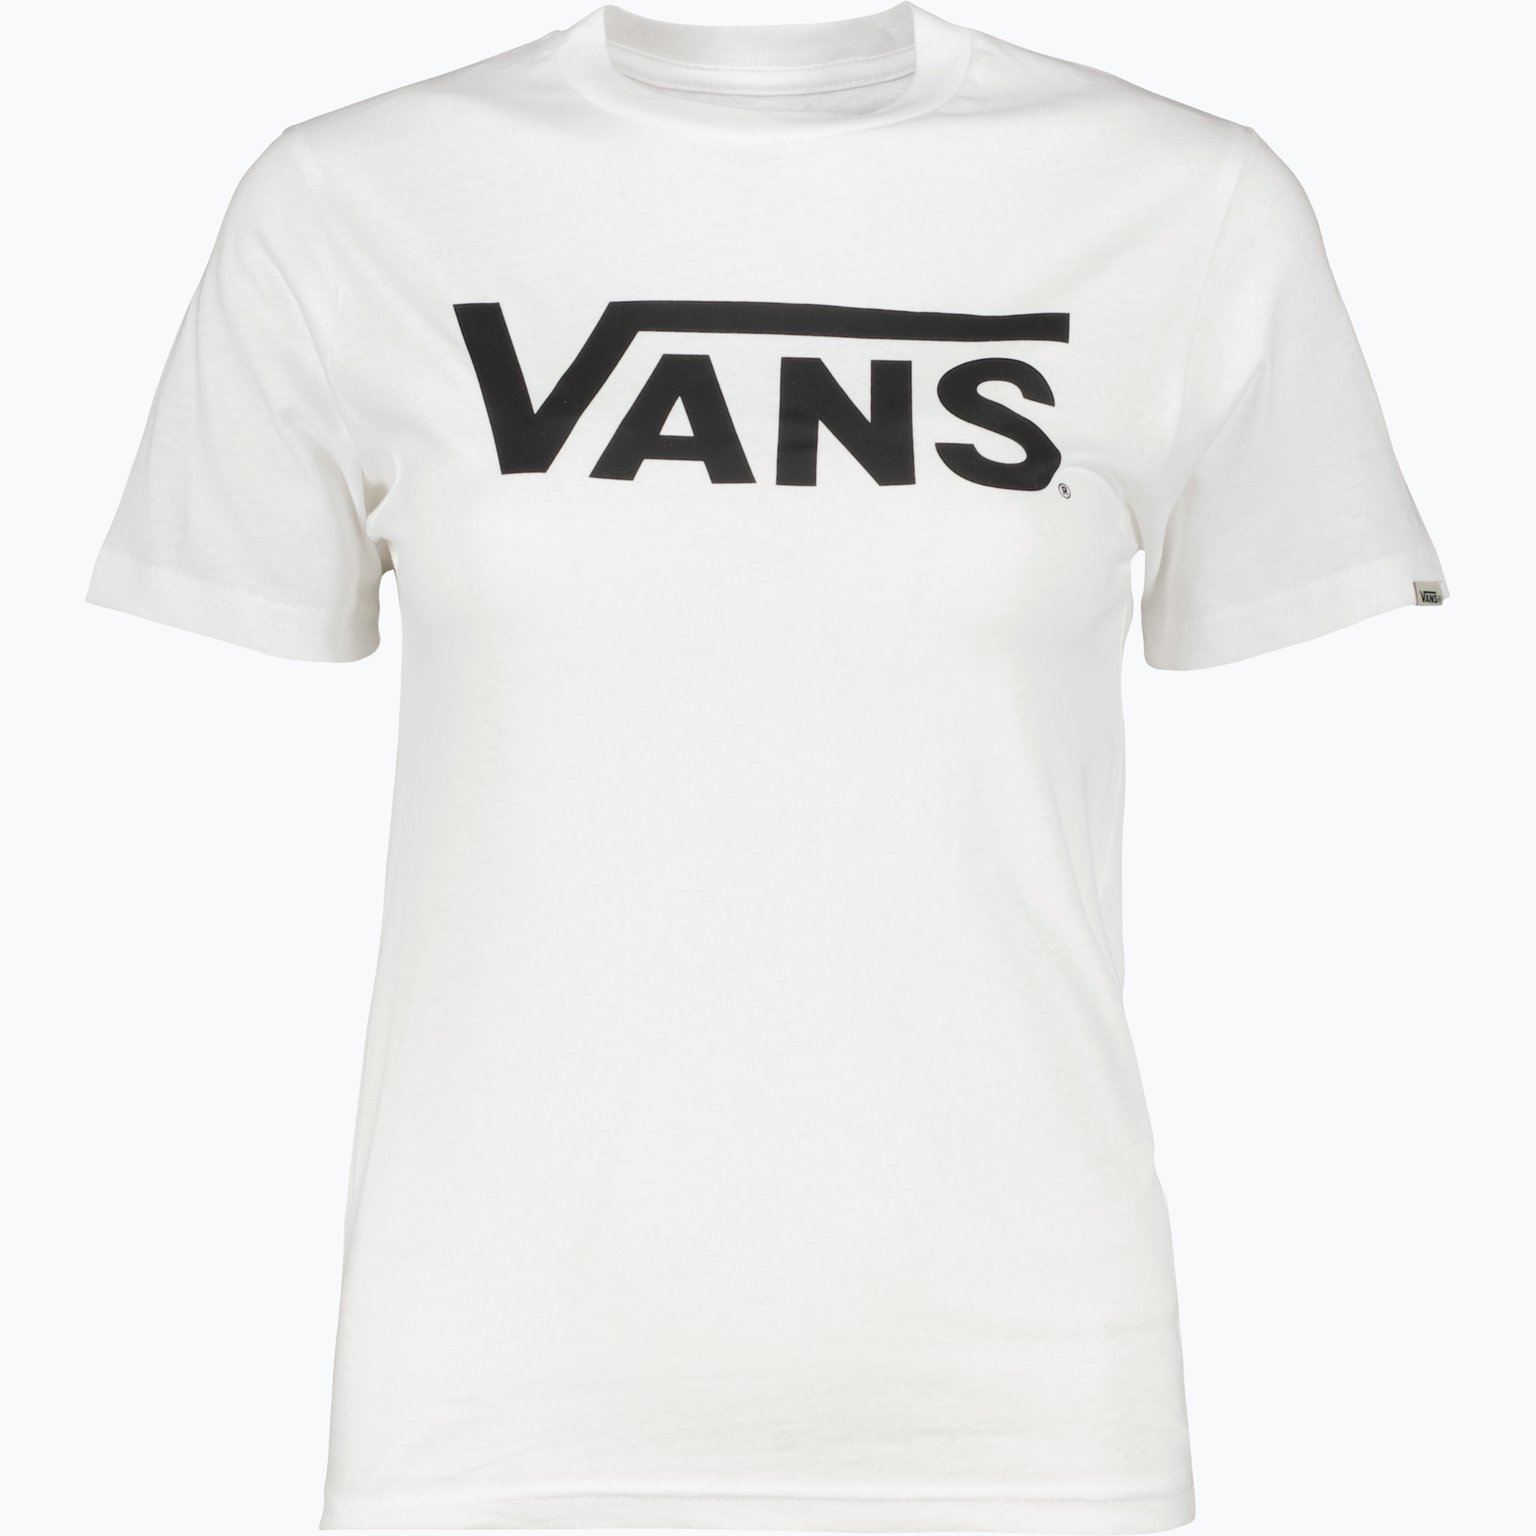 Vans Classic JR t-shirt